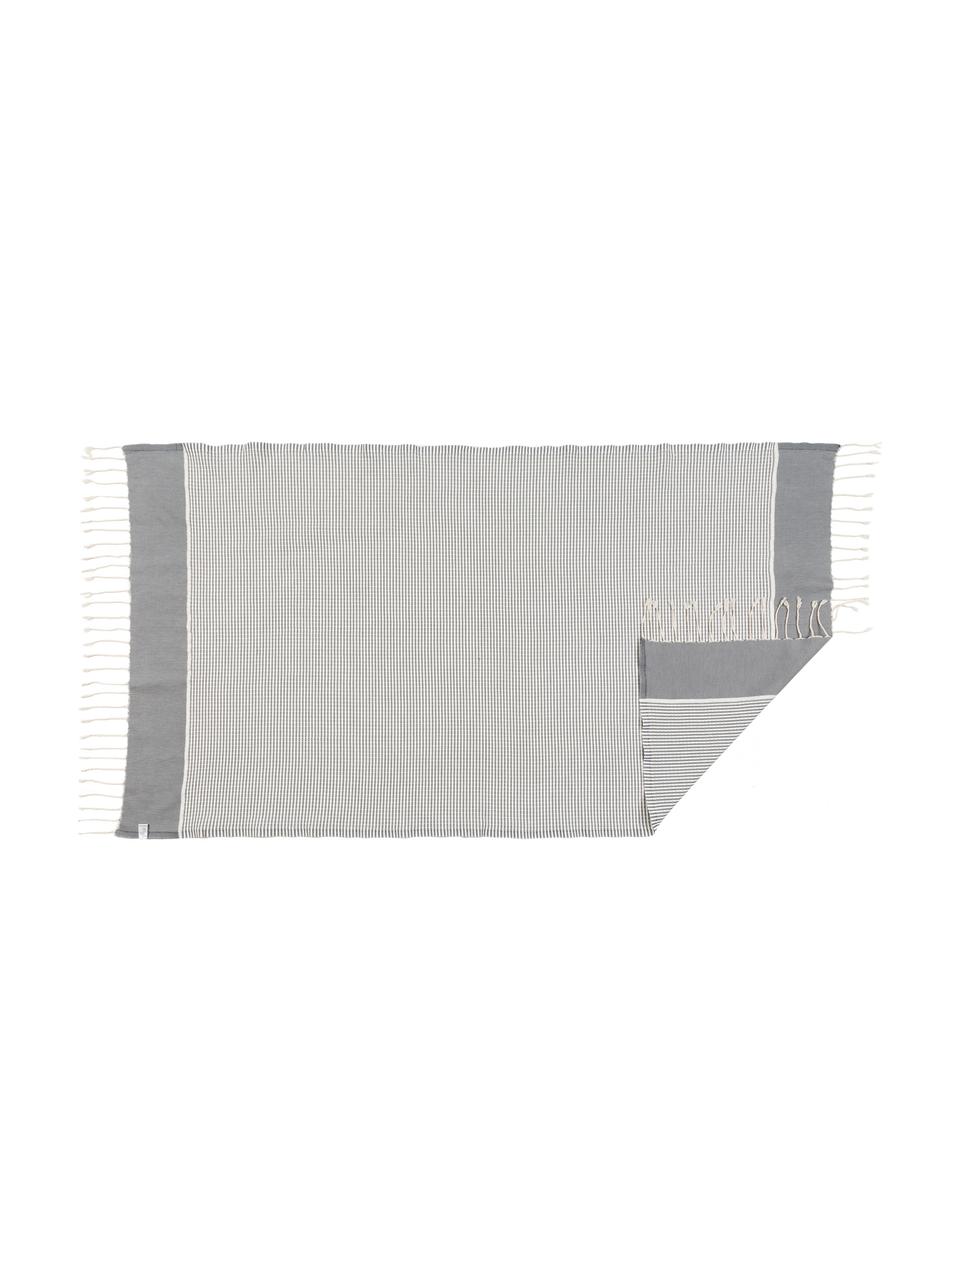 Lichte handdoekenset Copenhague met Lurex rand, 3-delig, Katoen,
zeer lichte kwaliteit, 200 g/m²
Lurex-draden, Grijs, zilverkleurig, wit, Set met verschillende formaten